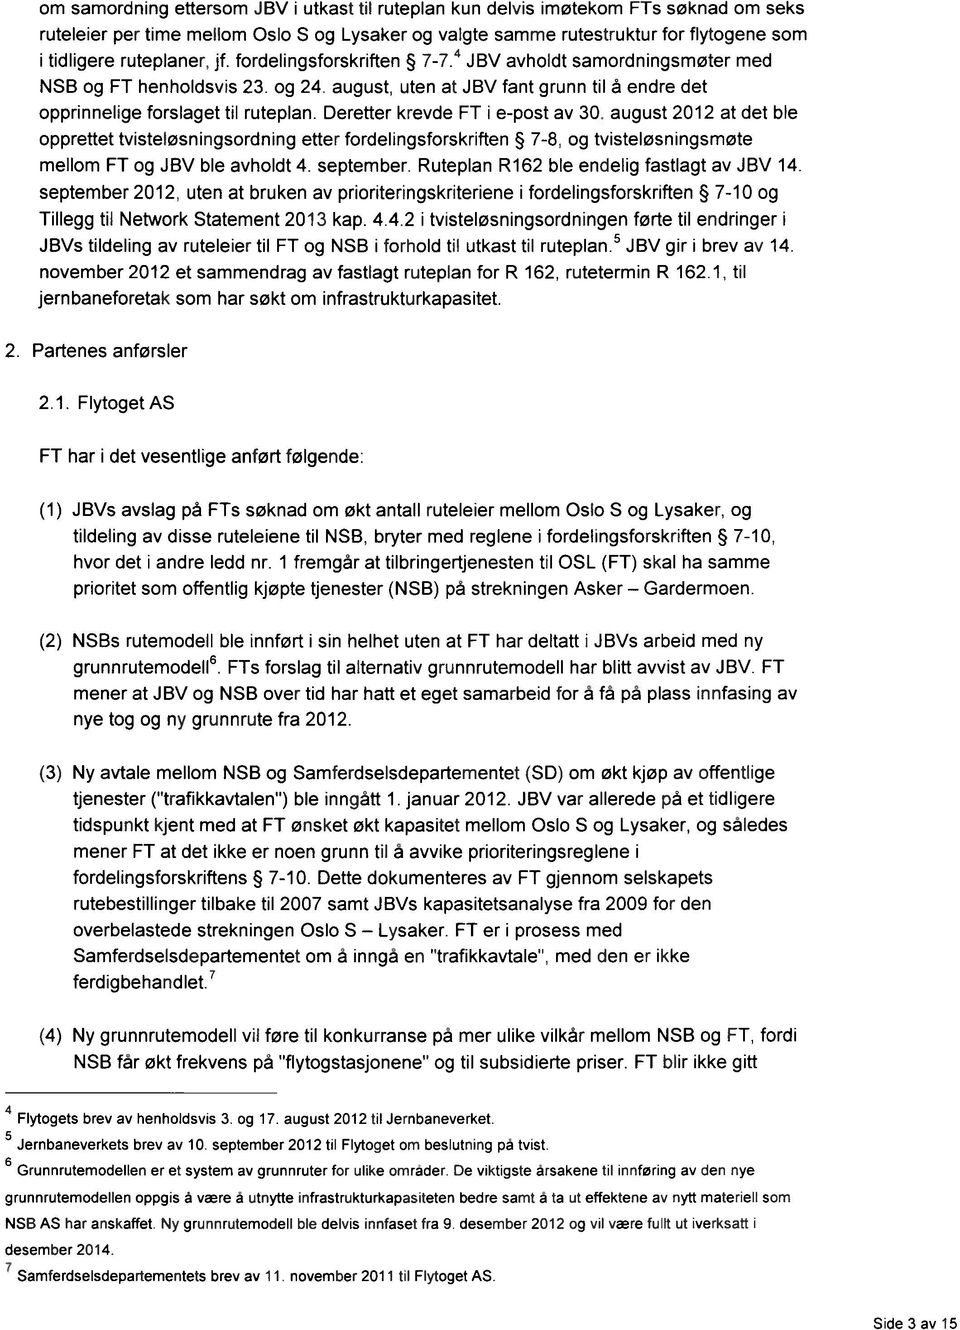 Deretter krevde FT i e-post av 30. august 2012 at det ble opprettet tvisteløsningsordning etter fordelingsforskriften 7-8, og tvisteløsningsmøte mellom FT og JBV ble avholdt 4. september.